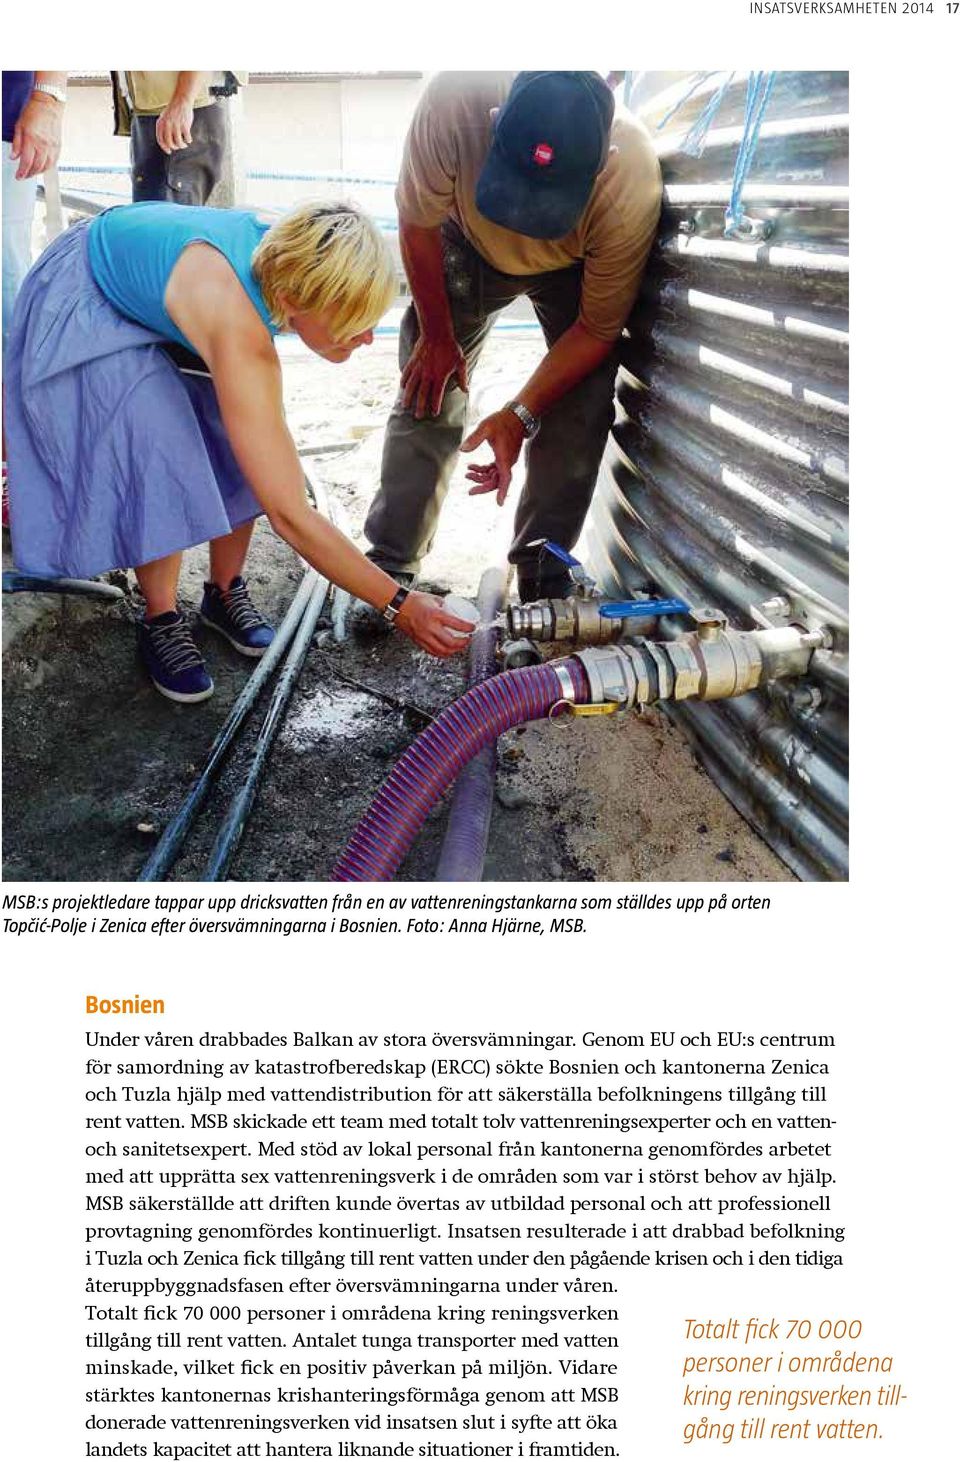 Genom EU och EU:s centrum för samordning av katastrofberedskap (ERCC) sökte Bosnien och kantonerna Zenica och Tuzla hjälp med vattendistribution för att säkerställa befolkningens tillgång till rent